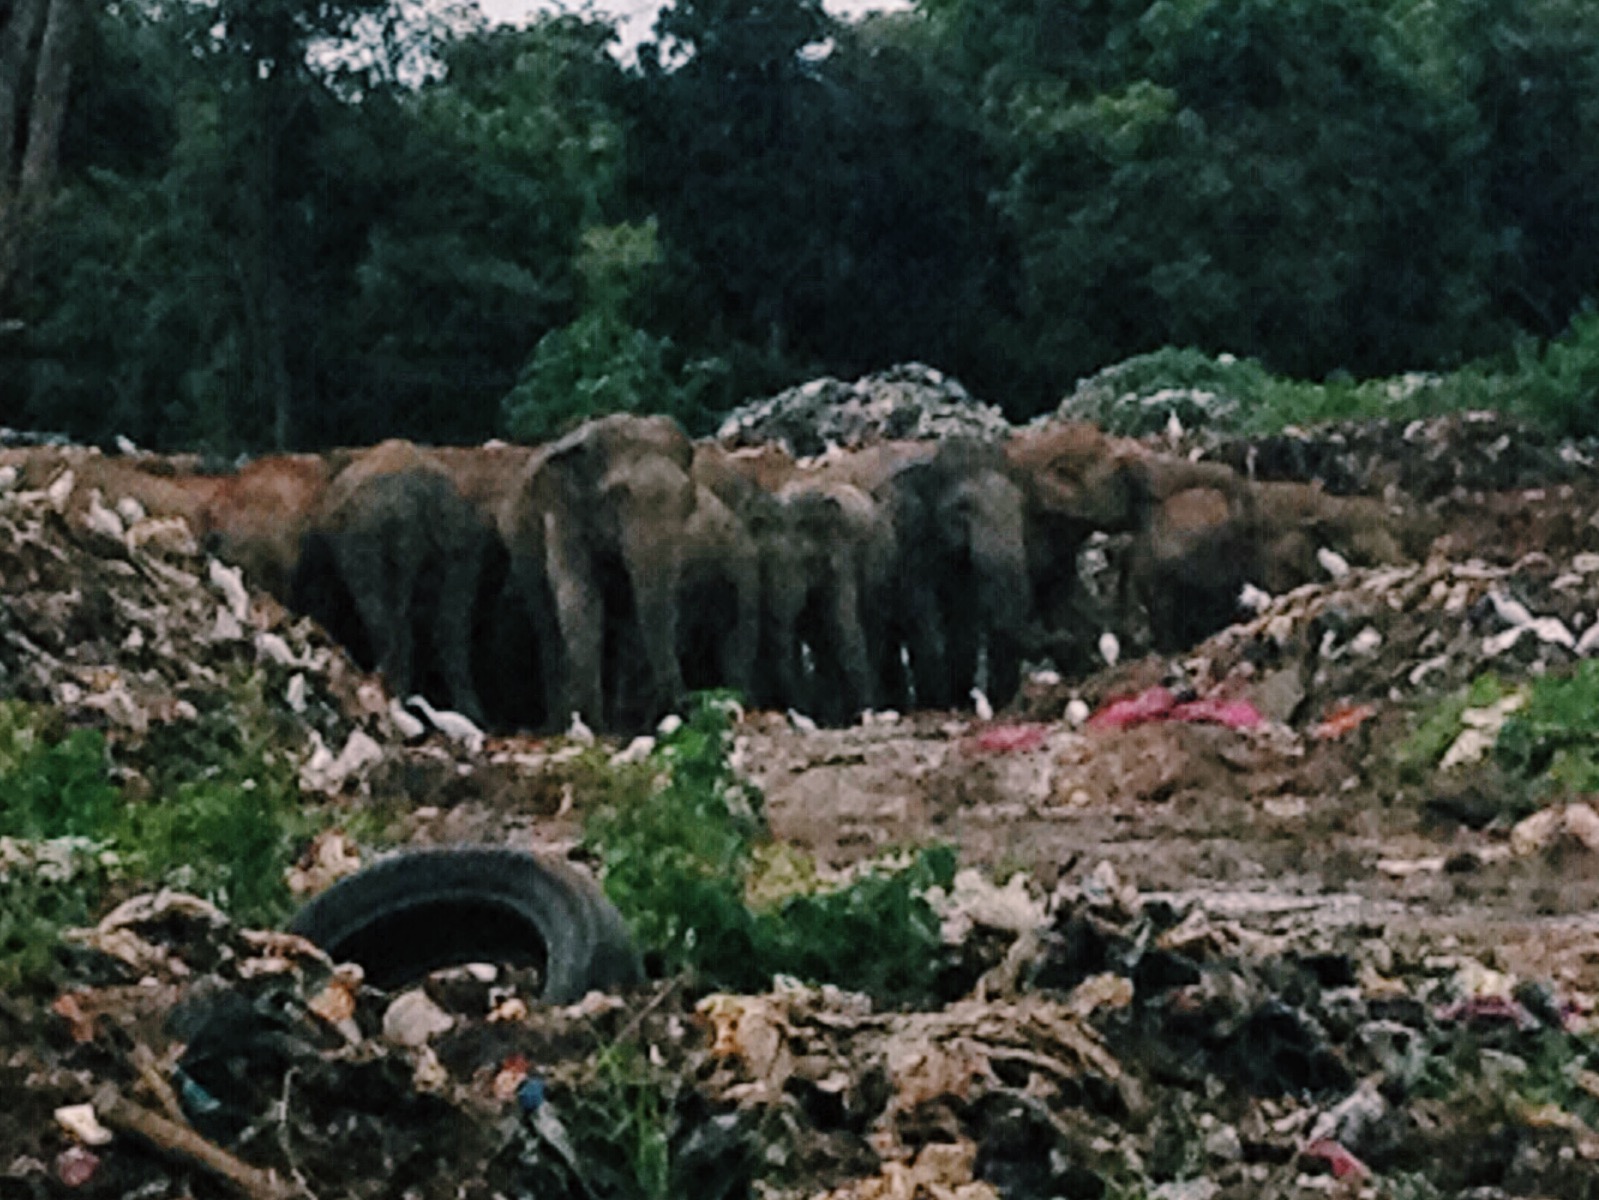 Elephants in Dambulla's trash dump